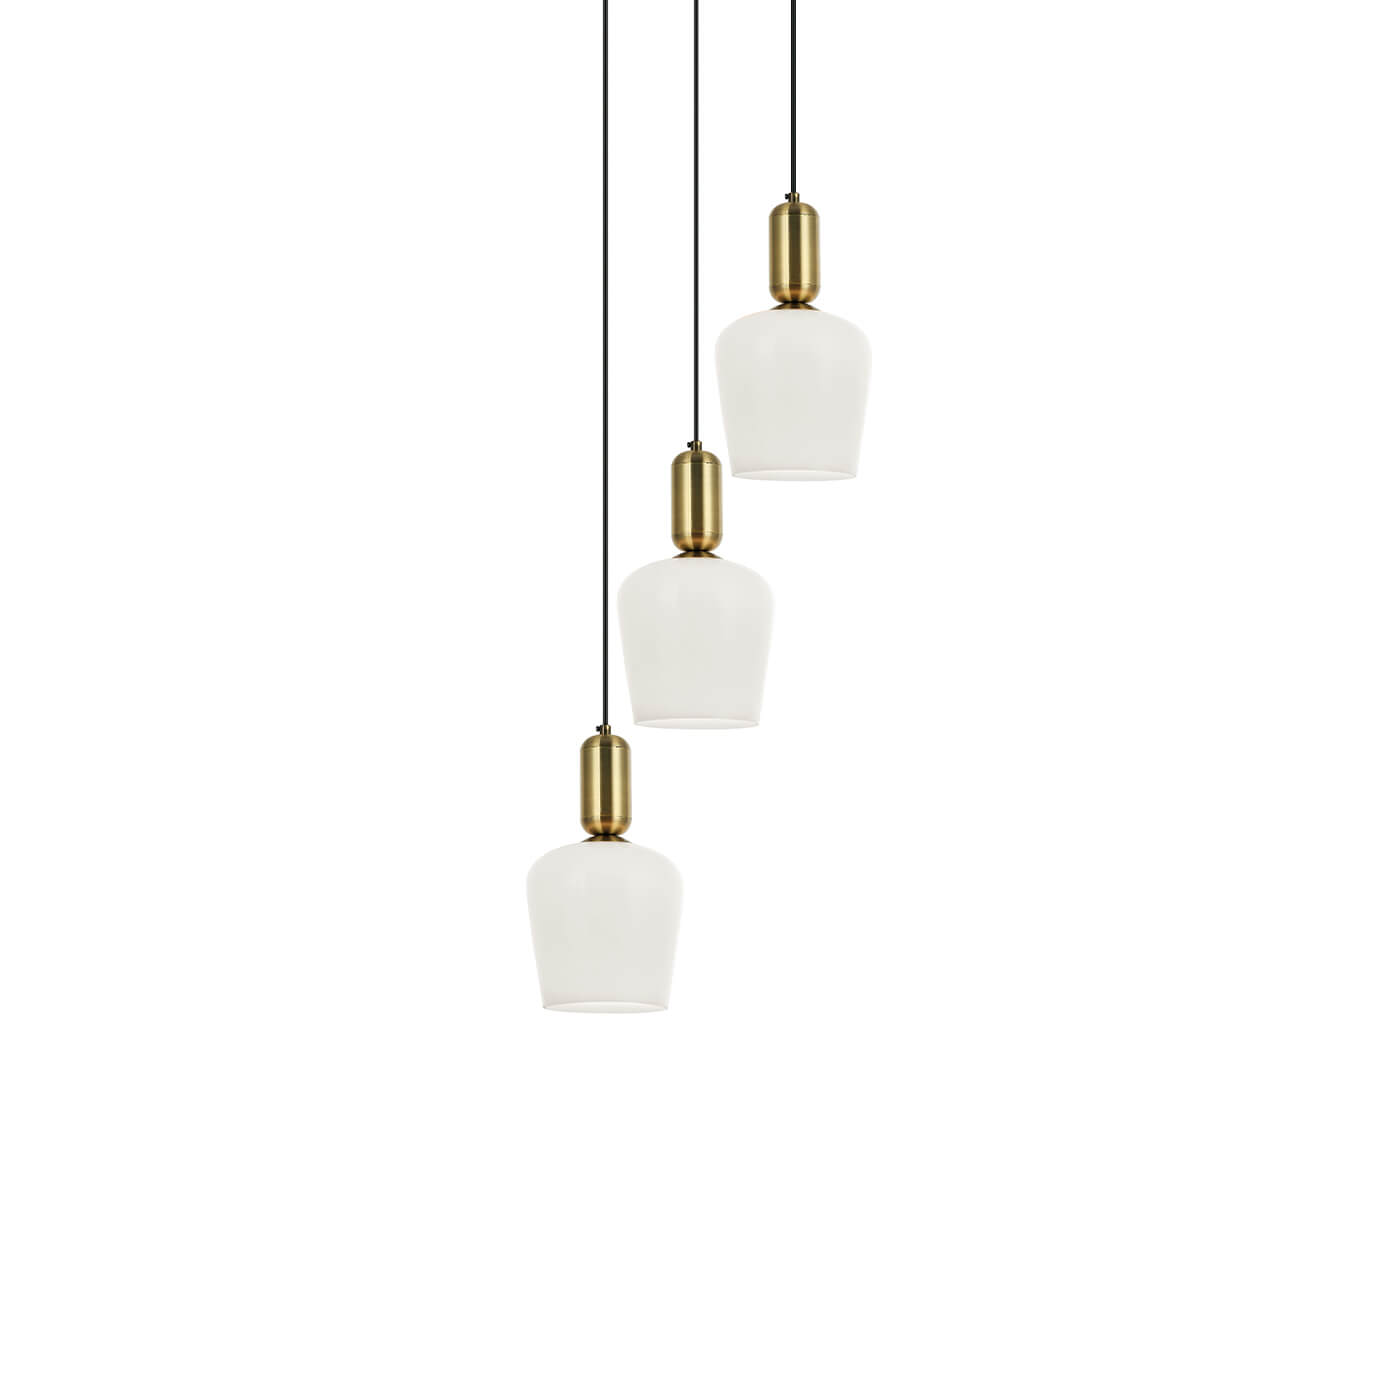 Cauti o lampa suspendata BARON S3 cu abajururi albe din sticla, design modern, elegant, pentru living, dining sau dormitor din colectia de lustre si candelabre Domicilio?